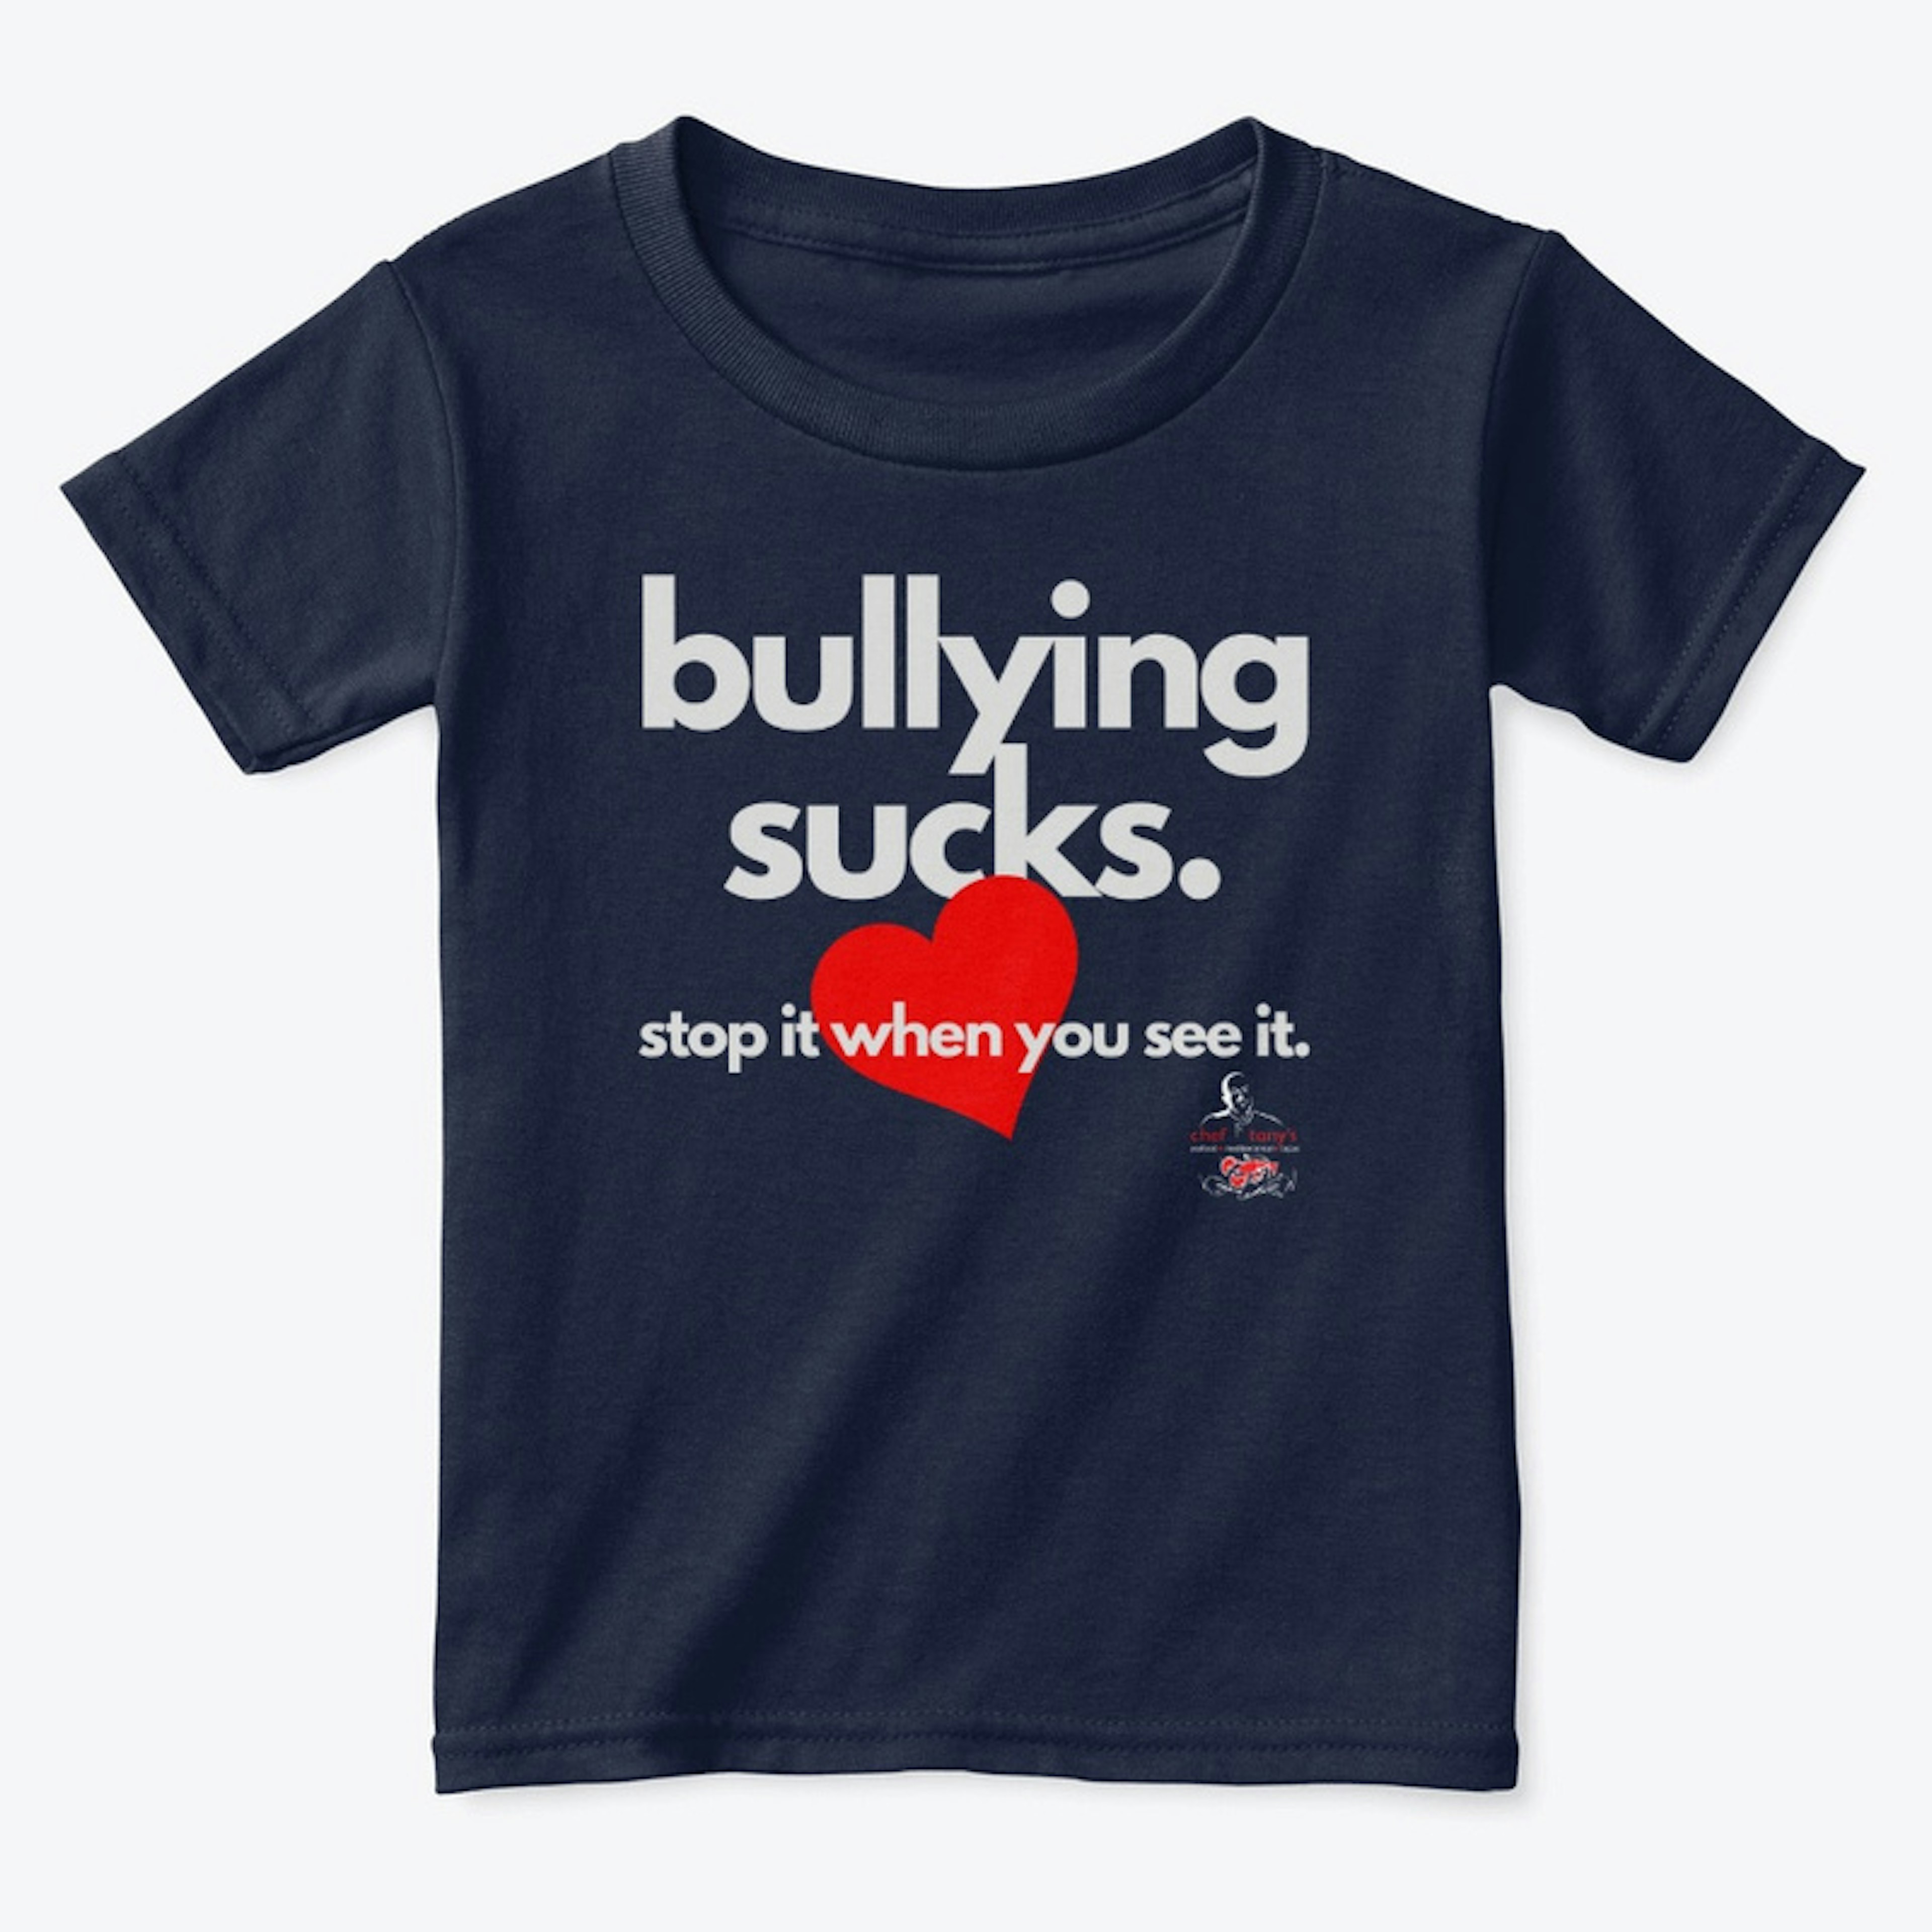 bullying sucks.